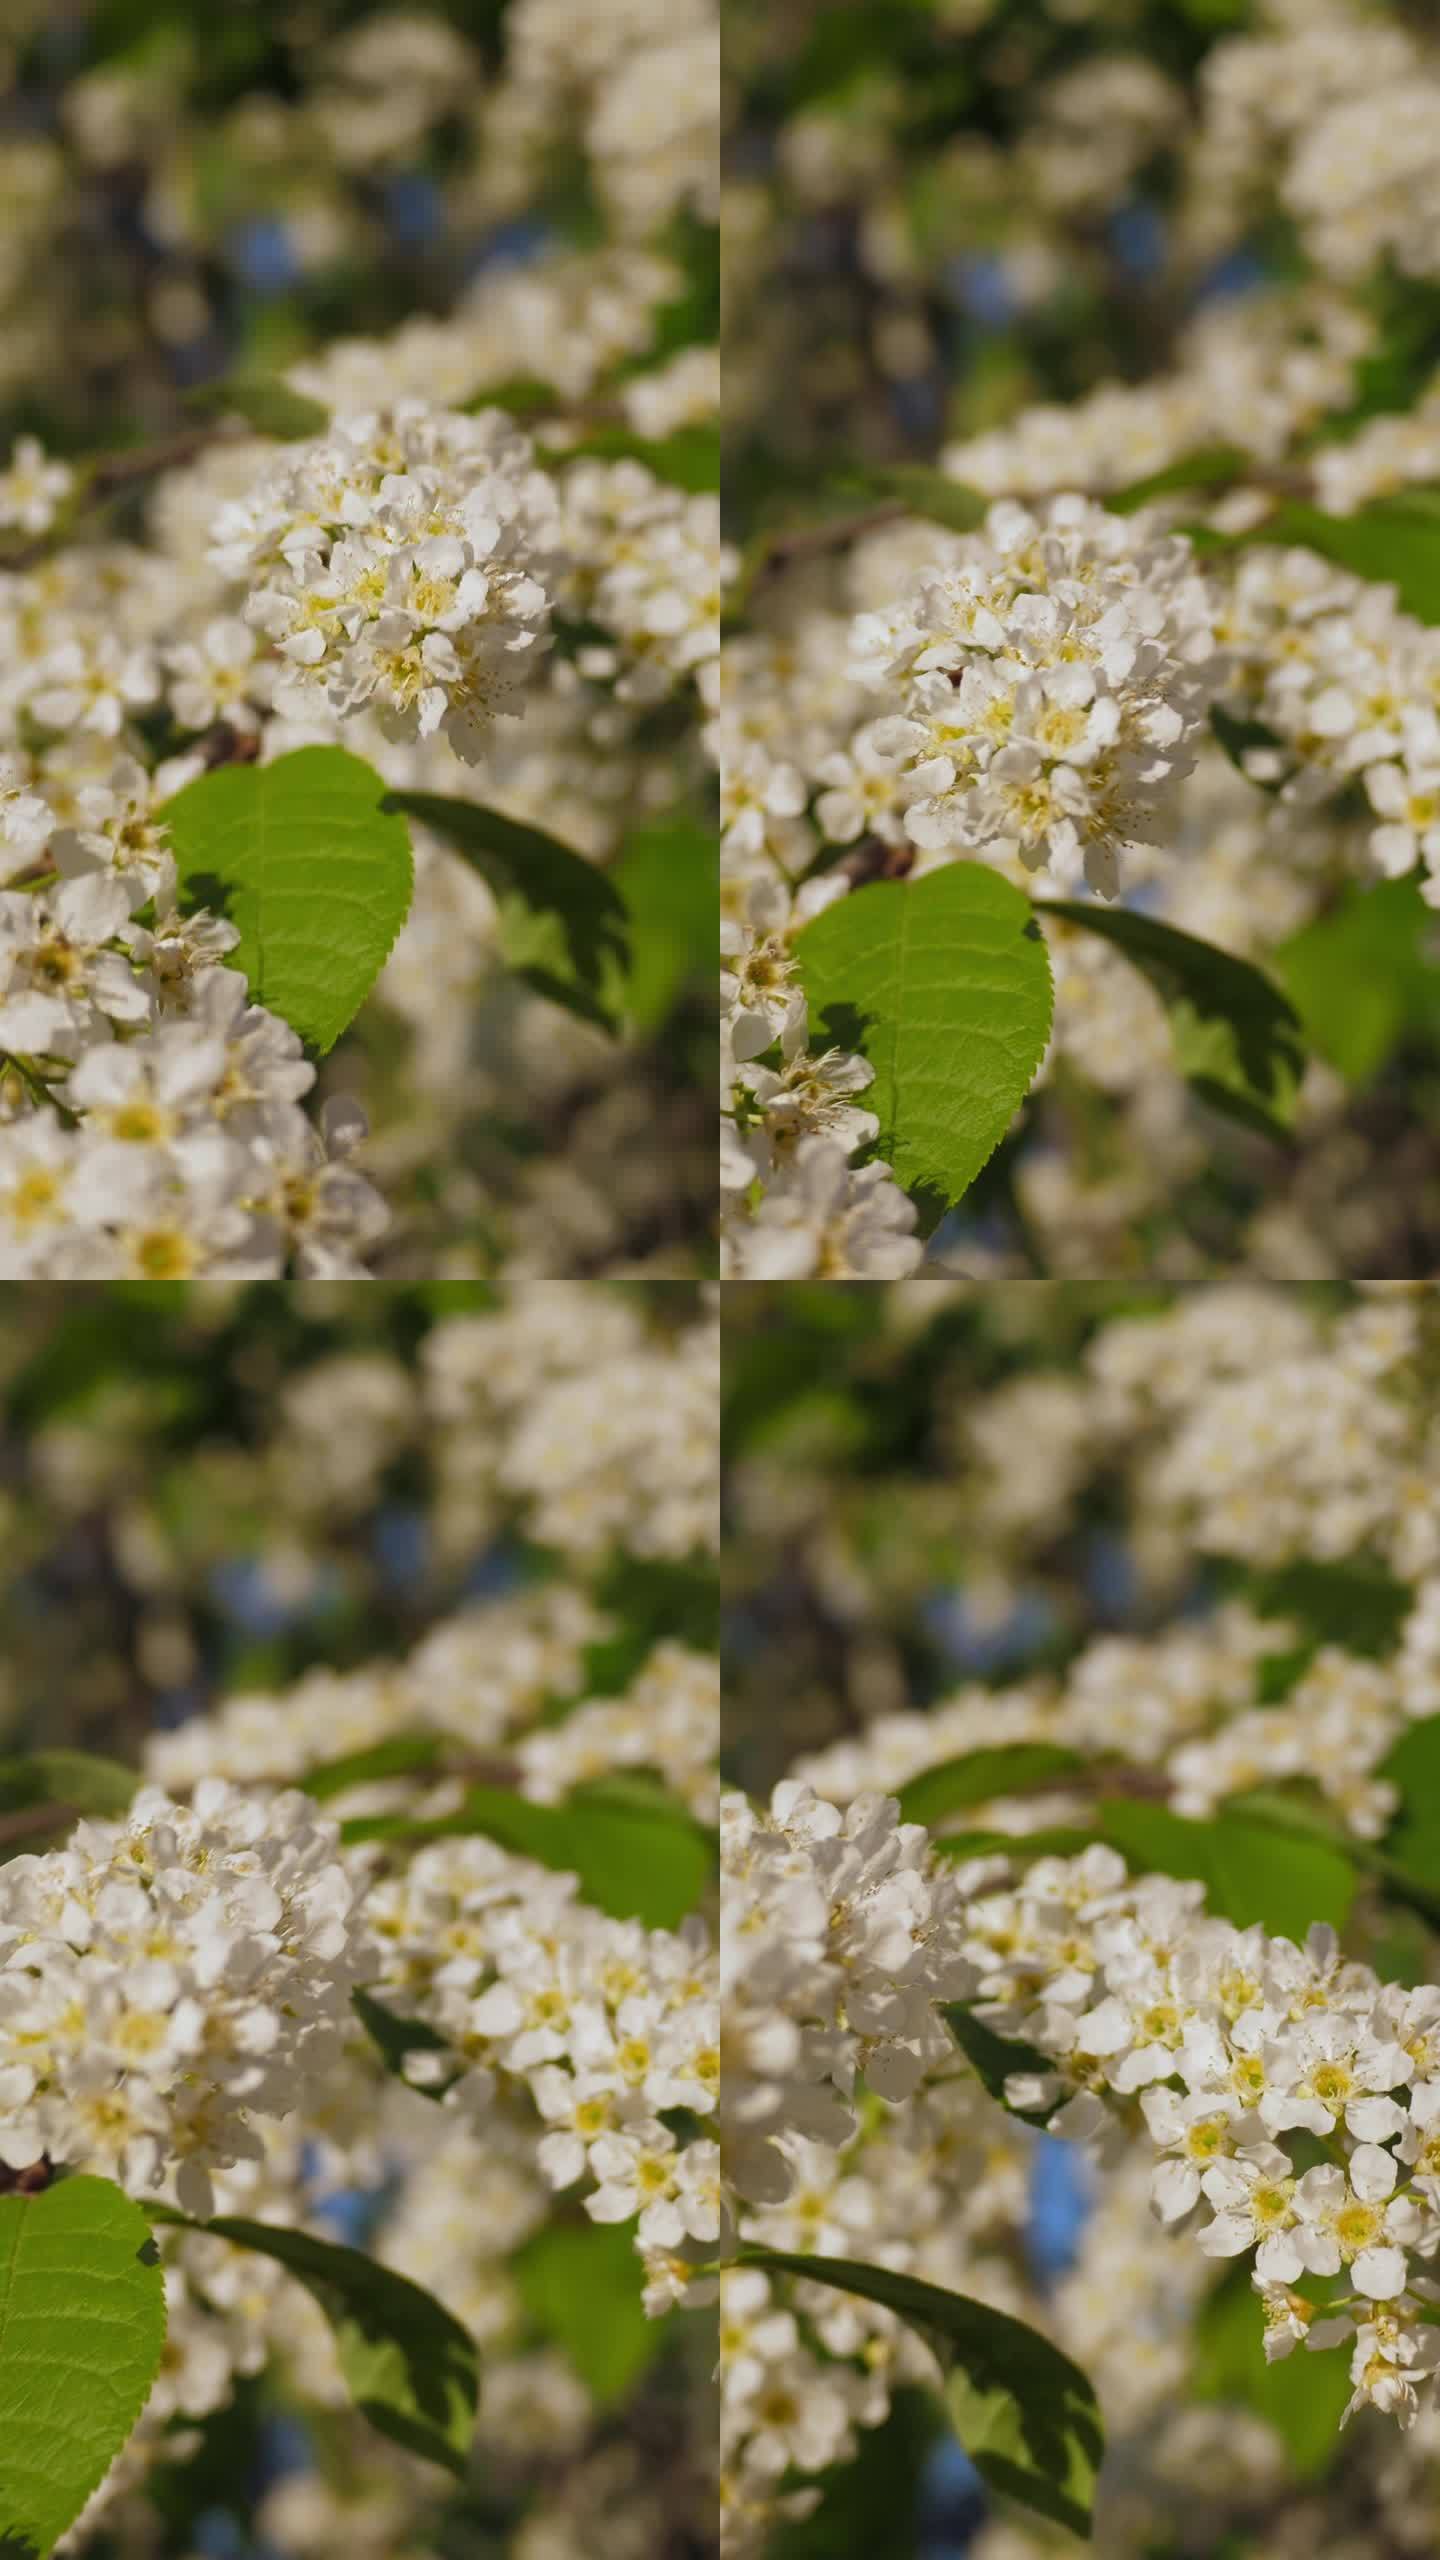 摄像机沿着开花的小鸟樱桃枝移动，垂直拍摄。